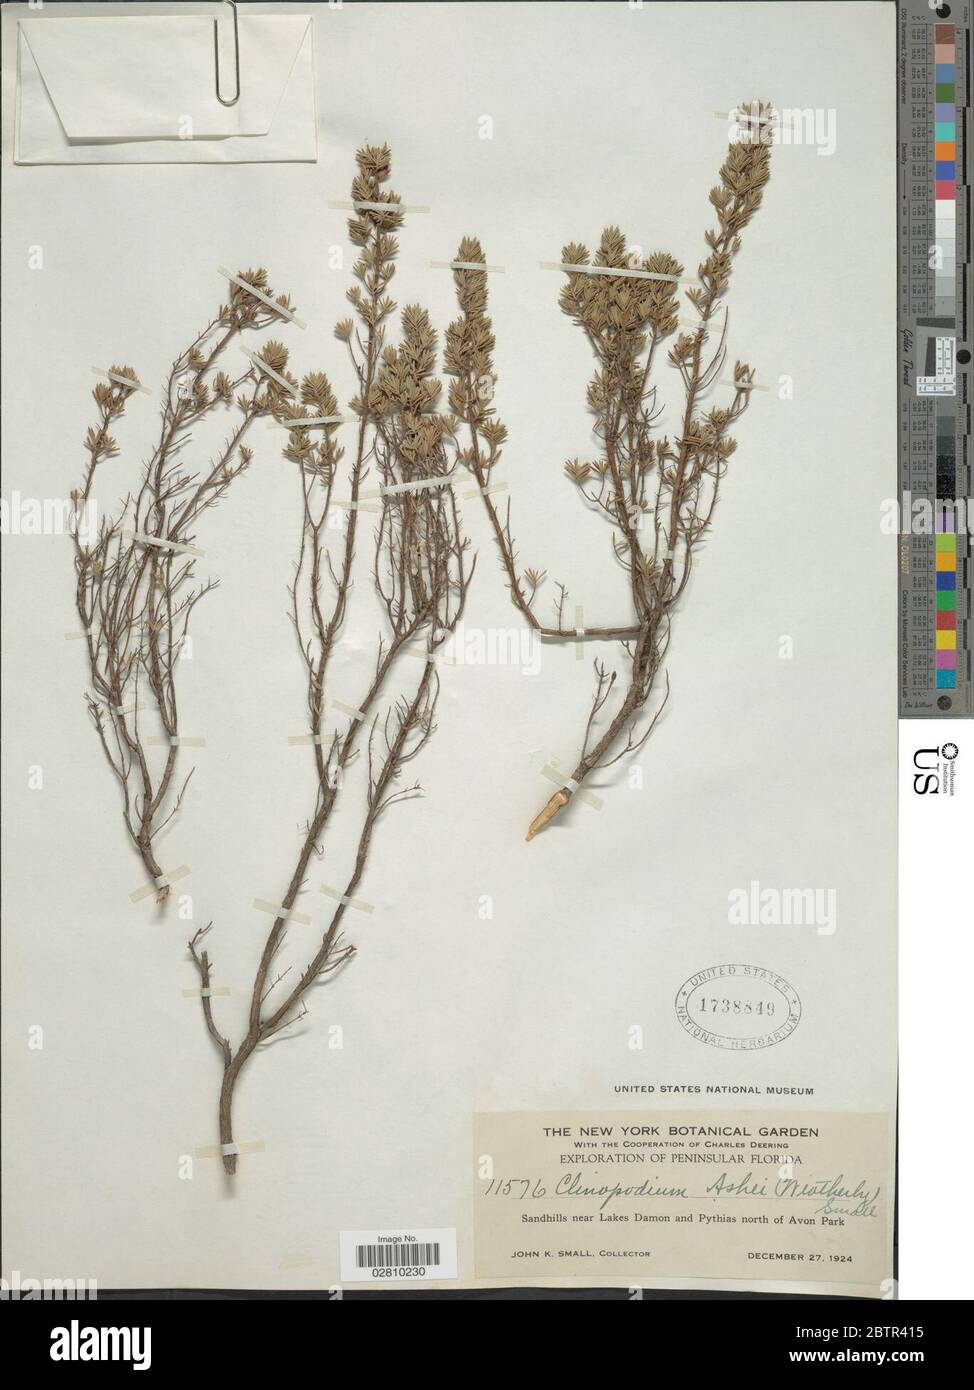 Clinopodium ashei Weath Small. Stock Photo